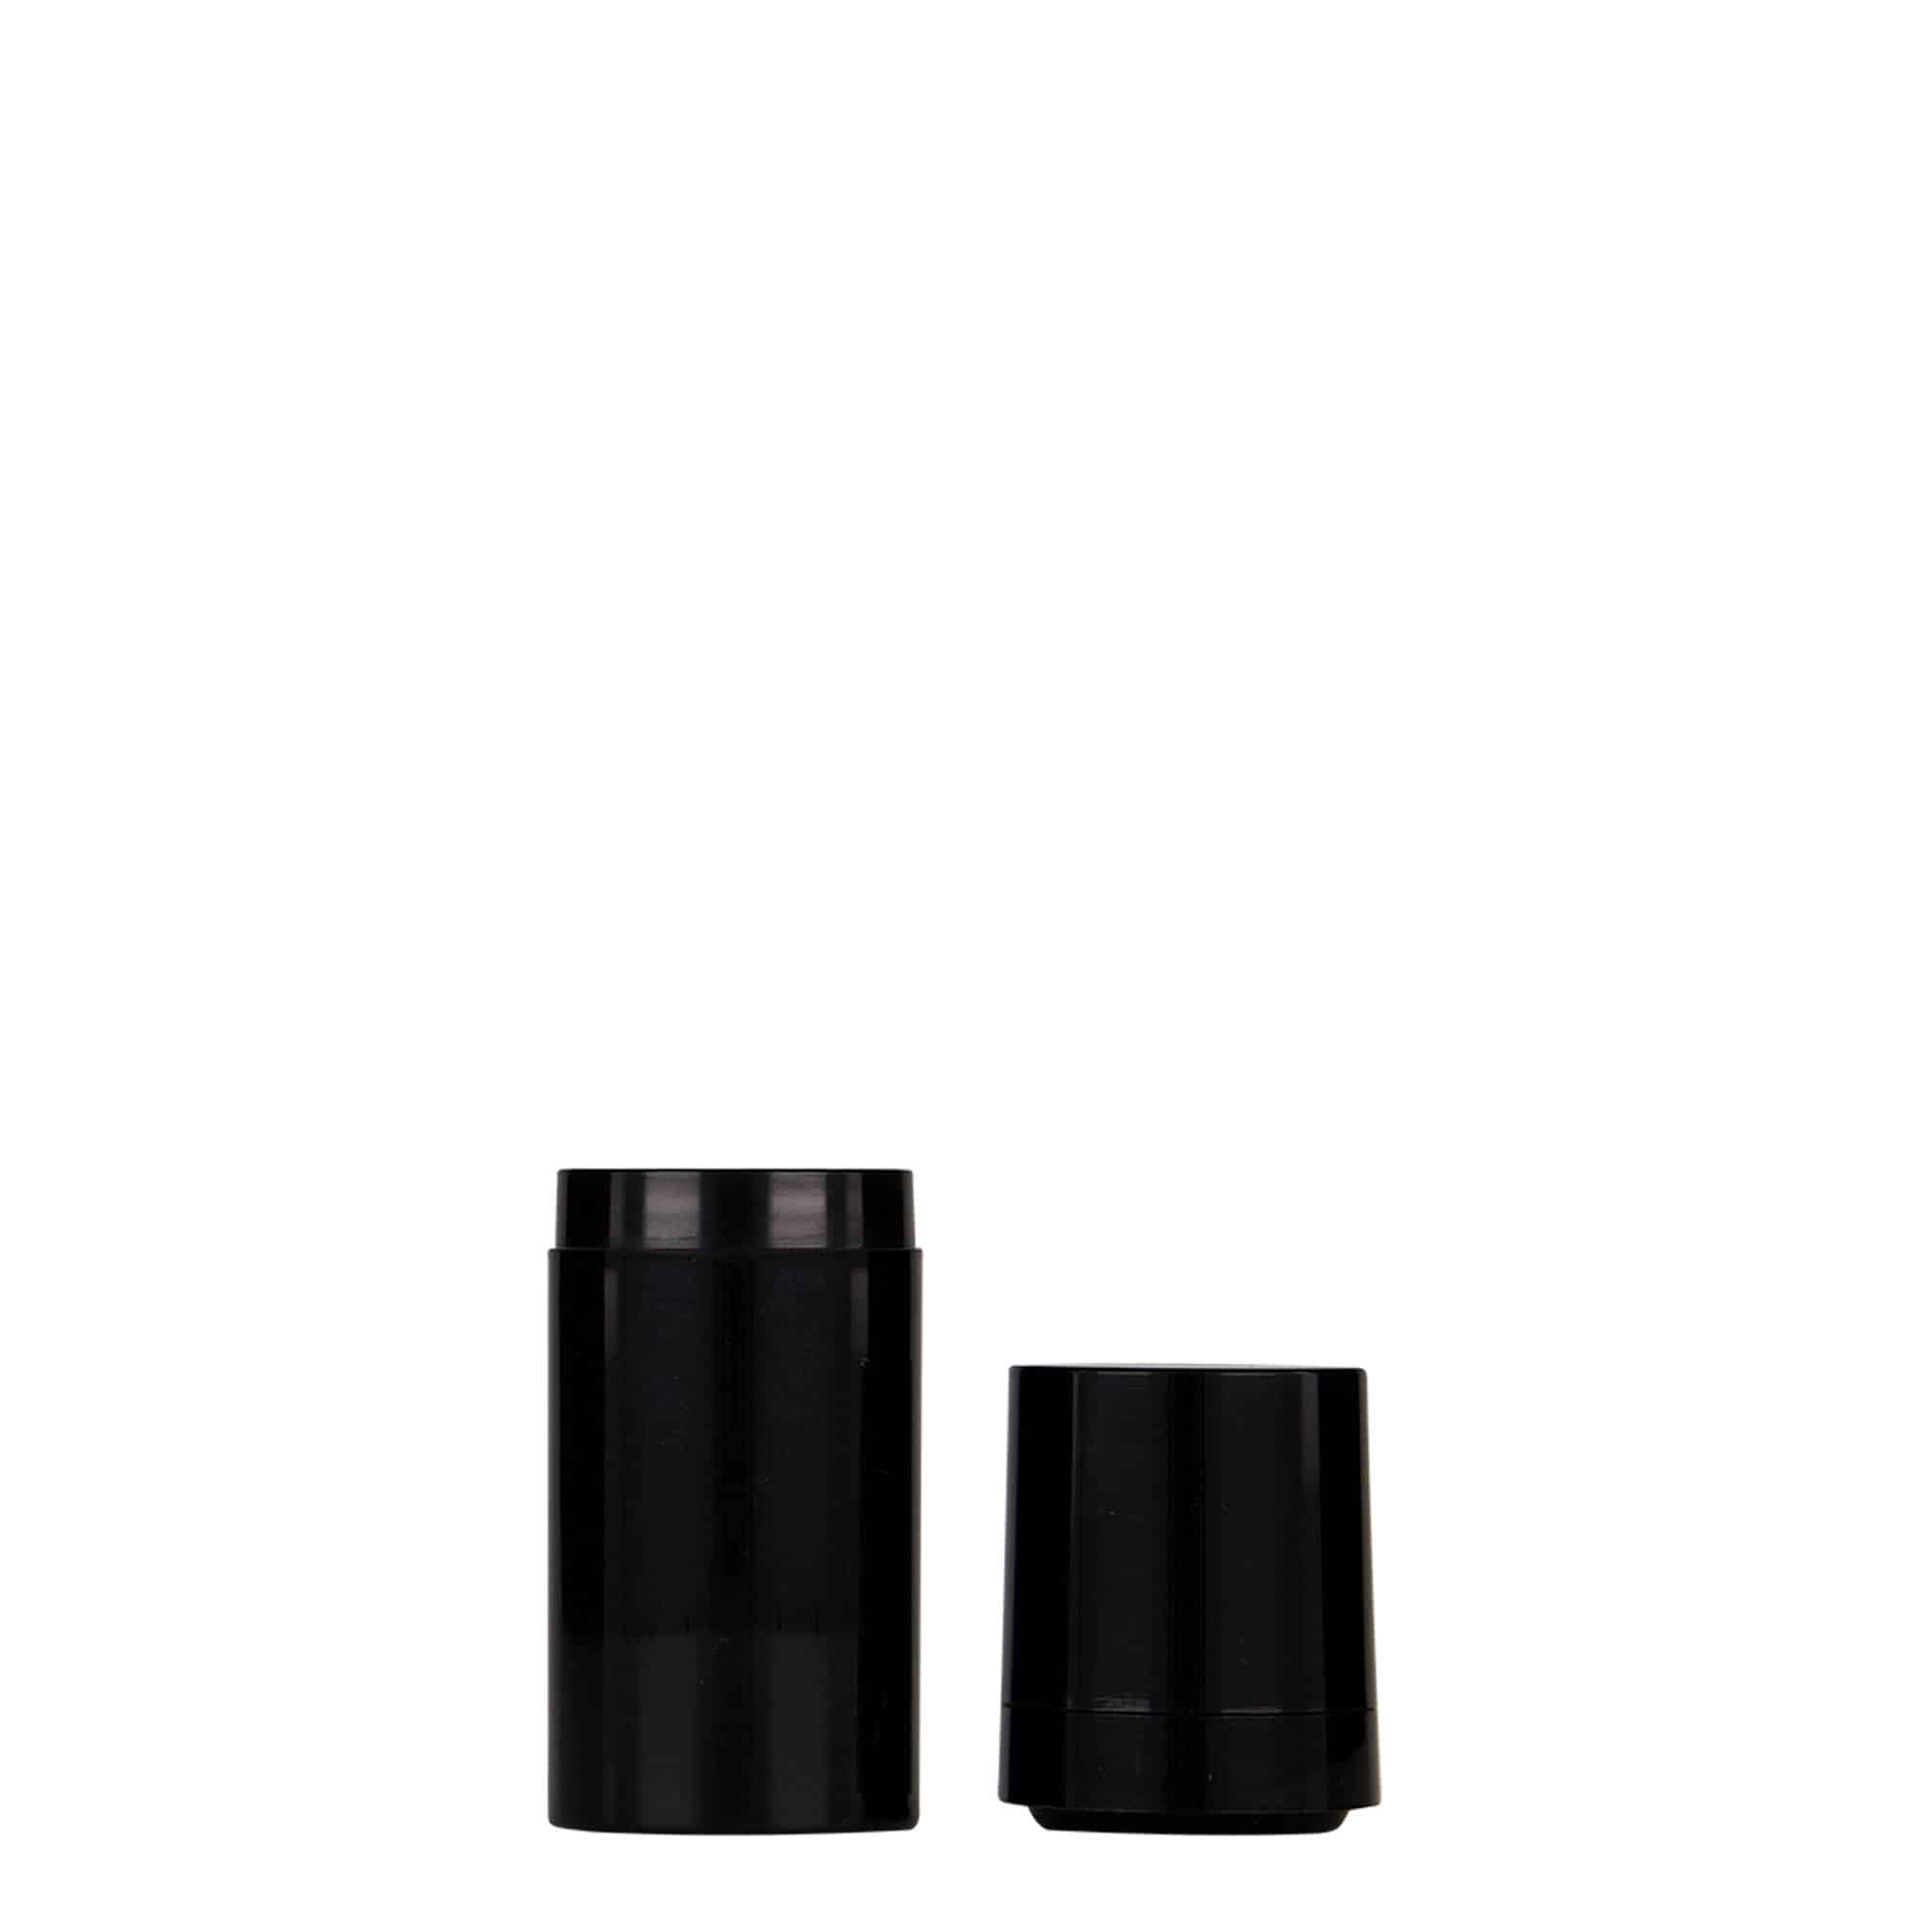 15 ml dozownik airless 'Micro', tworzywo sztuczne PP, kolor czarny